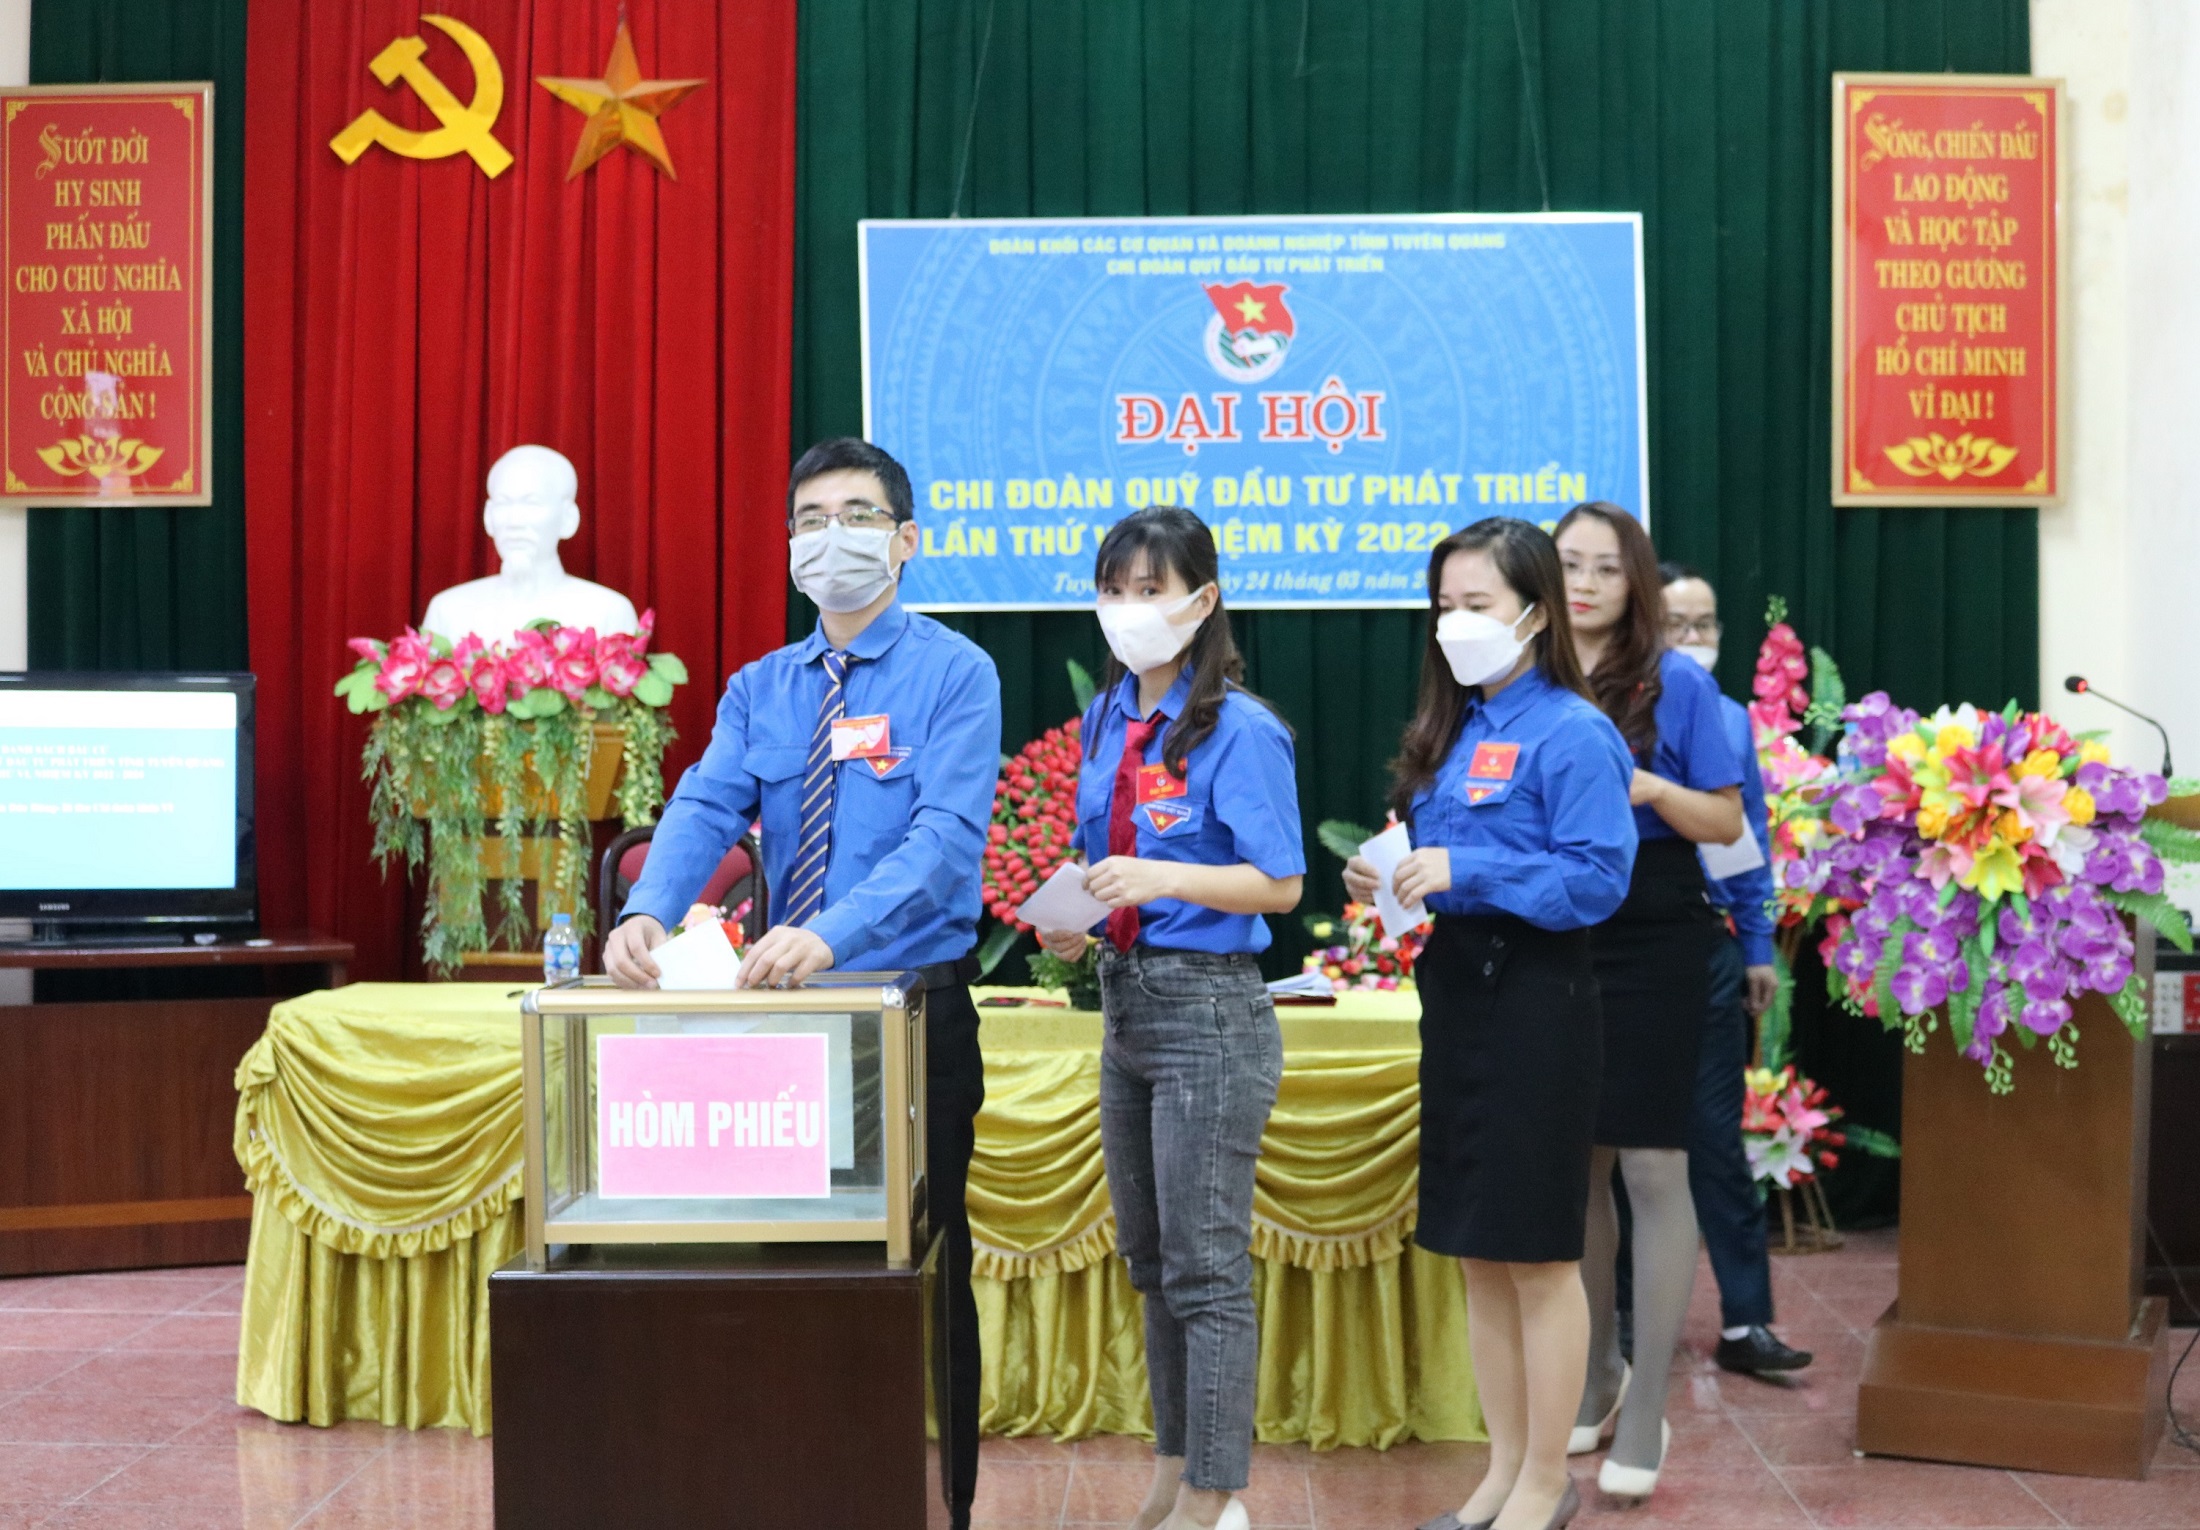 Quỹ Đầu tư phát triển tỉnh Tuyên Quang tổ chức thành công Đại hội Chi đoàn Quỹ lần thứ VI, nhiệm kỳ 2022 - 2024